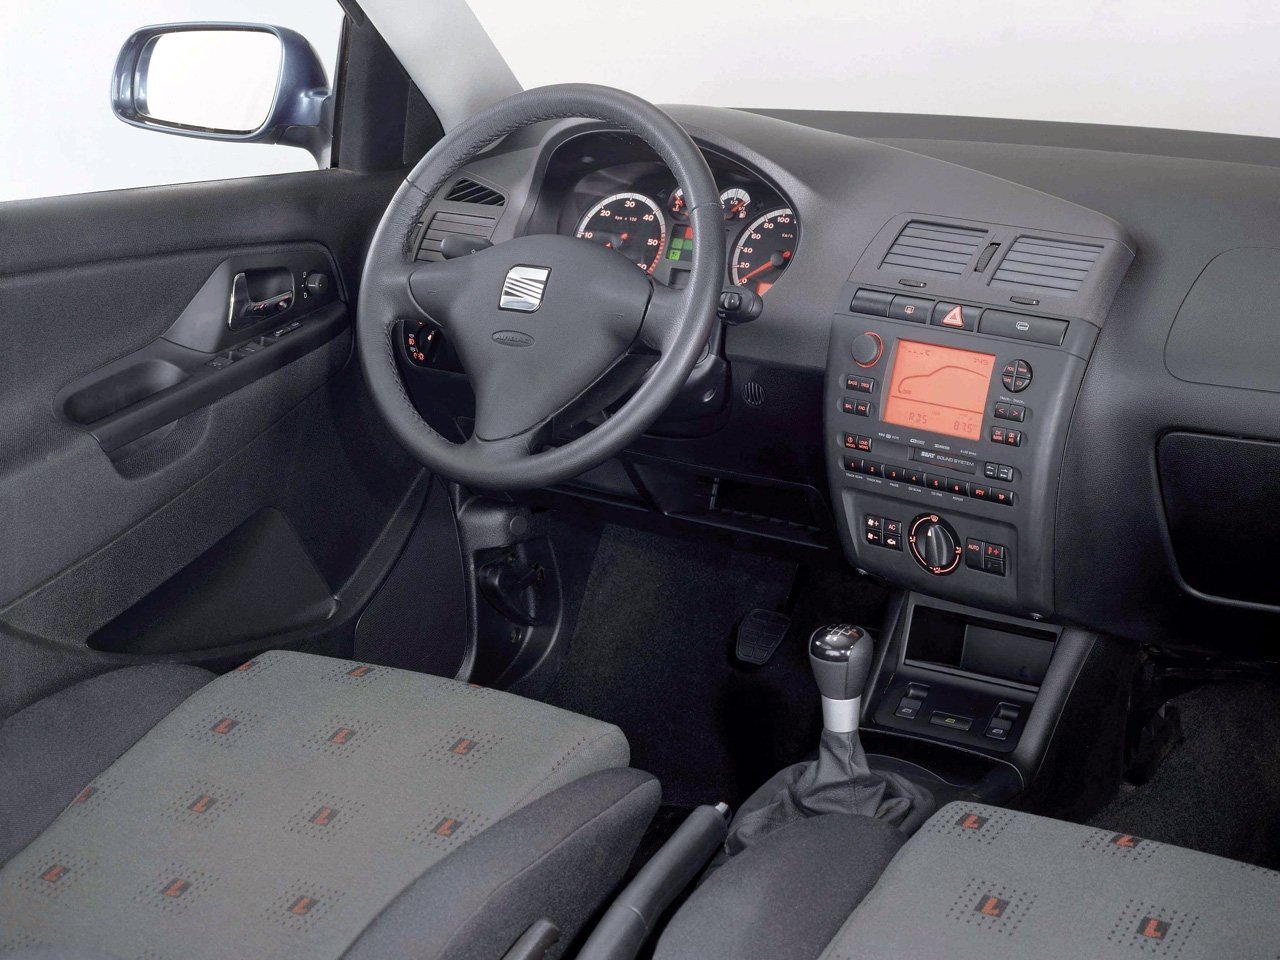 седан SEAT Cordoba 1999 - 2002г выпуска модификация 1.4 MT (60 л.с.)